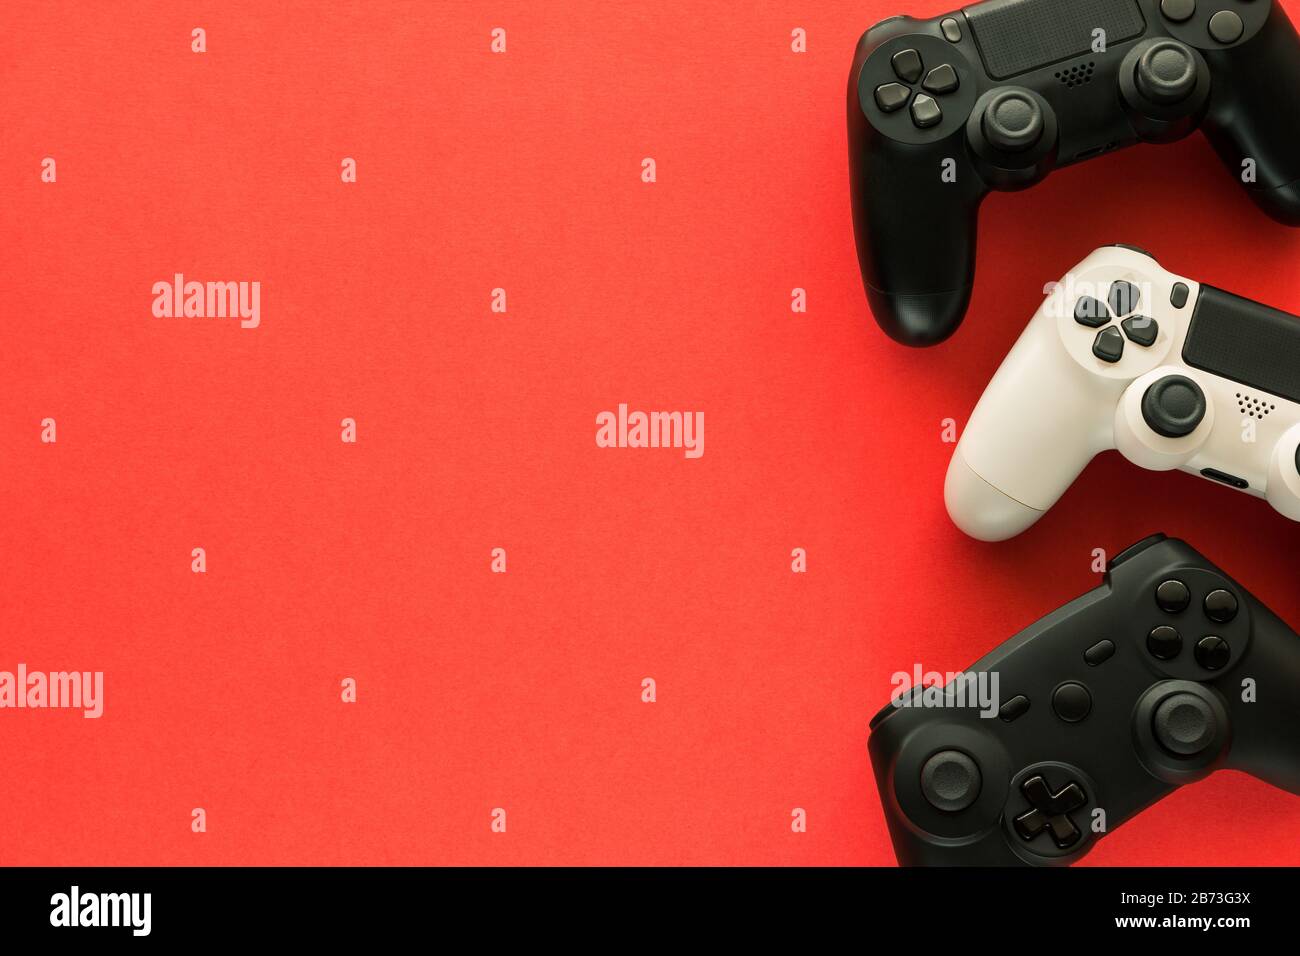 Stock-Foto von drei Gamepads auf rotem Hintergrund und Kopierbereich auf der linken Seite Stockfoto